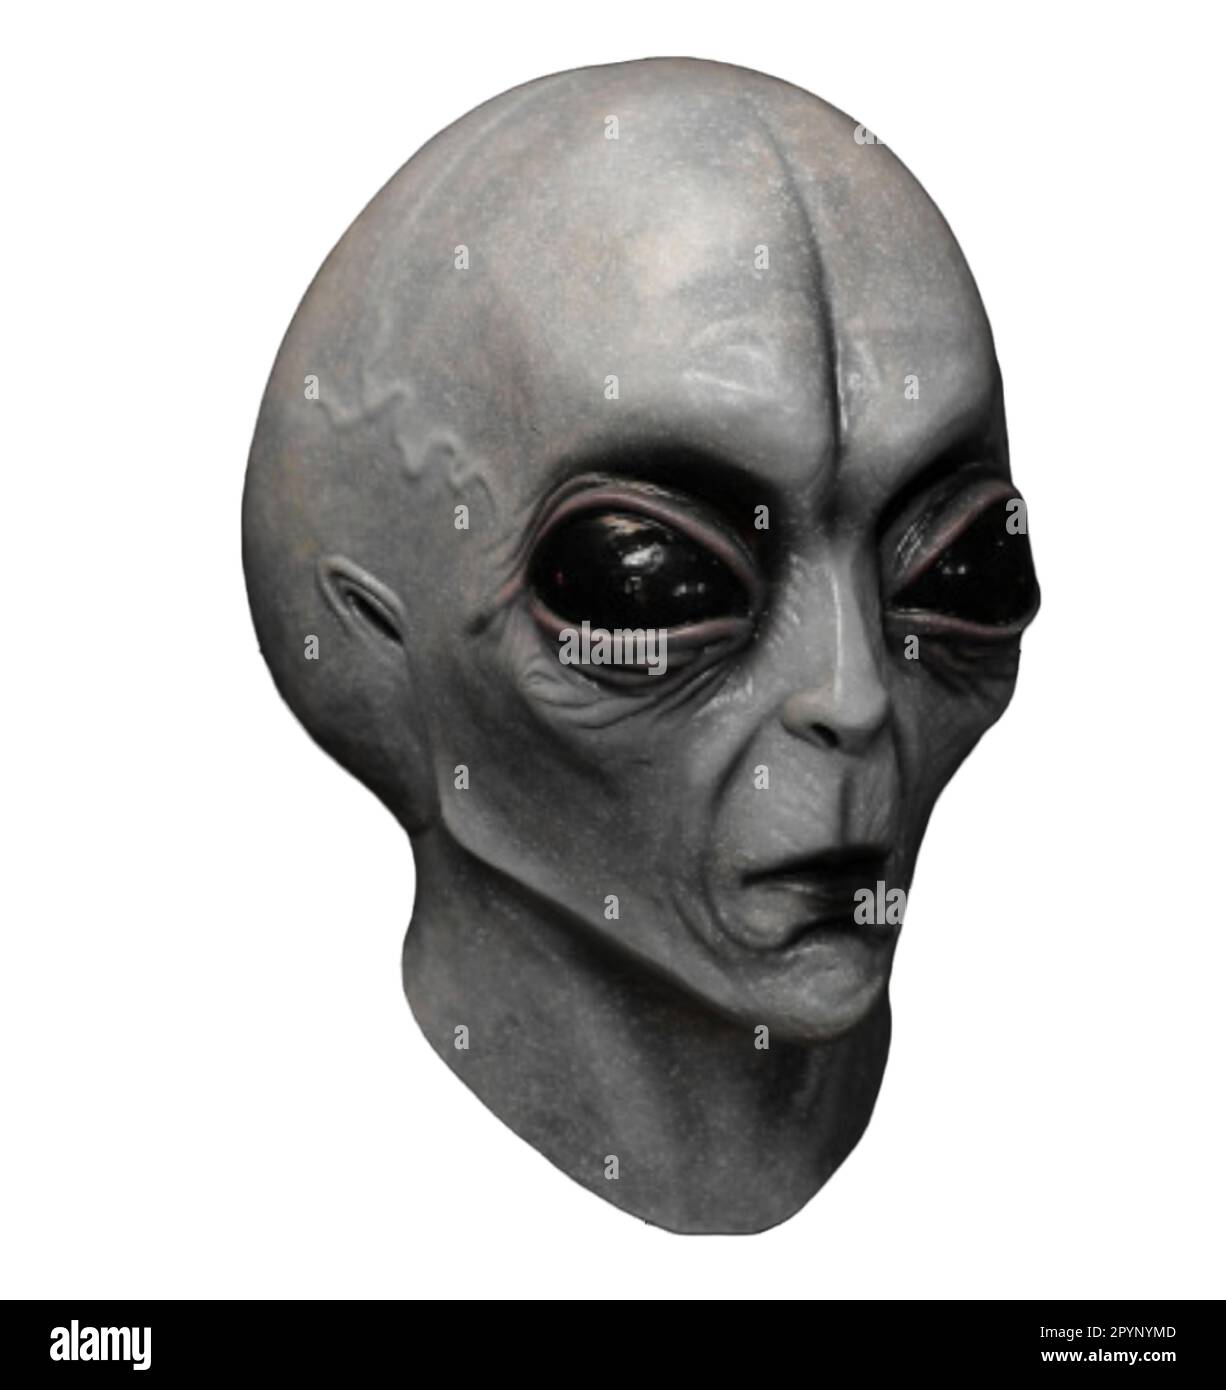 Alien Head Stock Vector